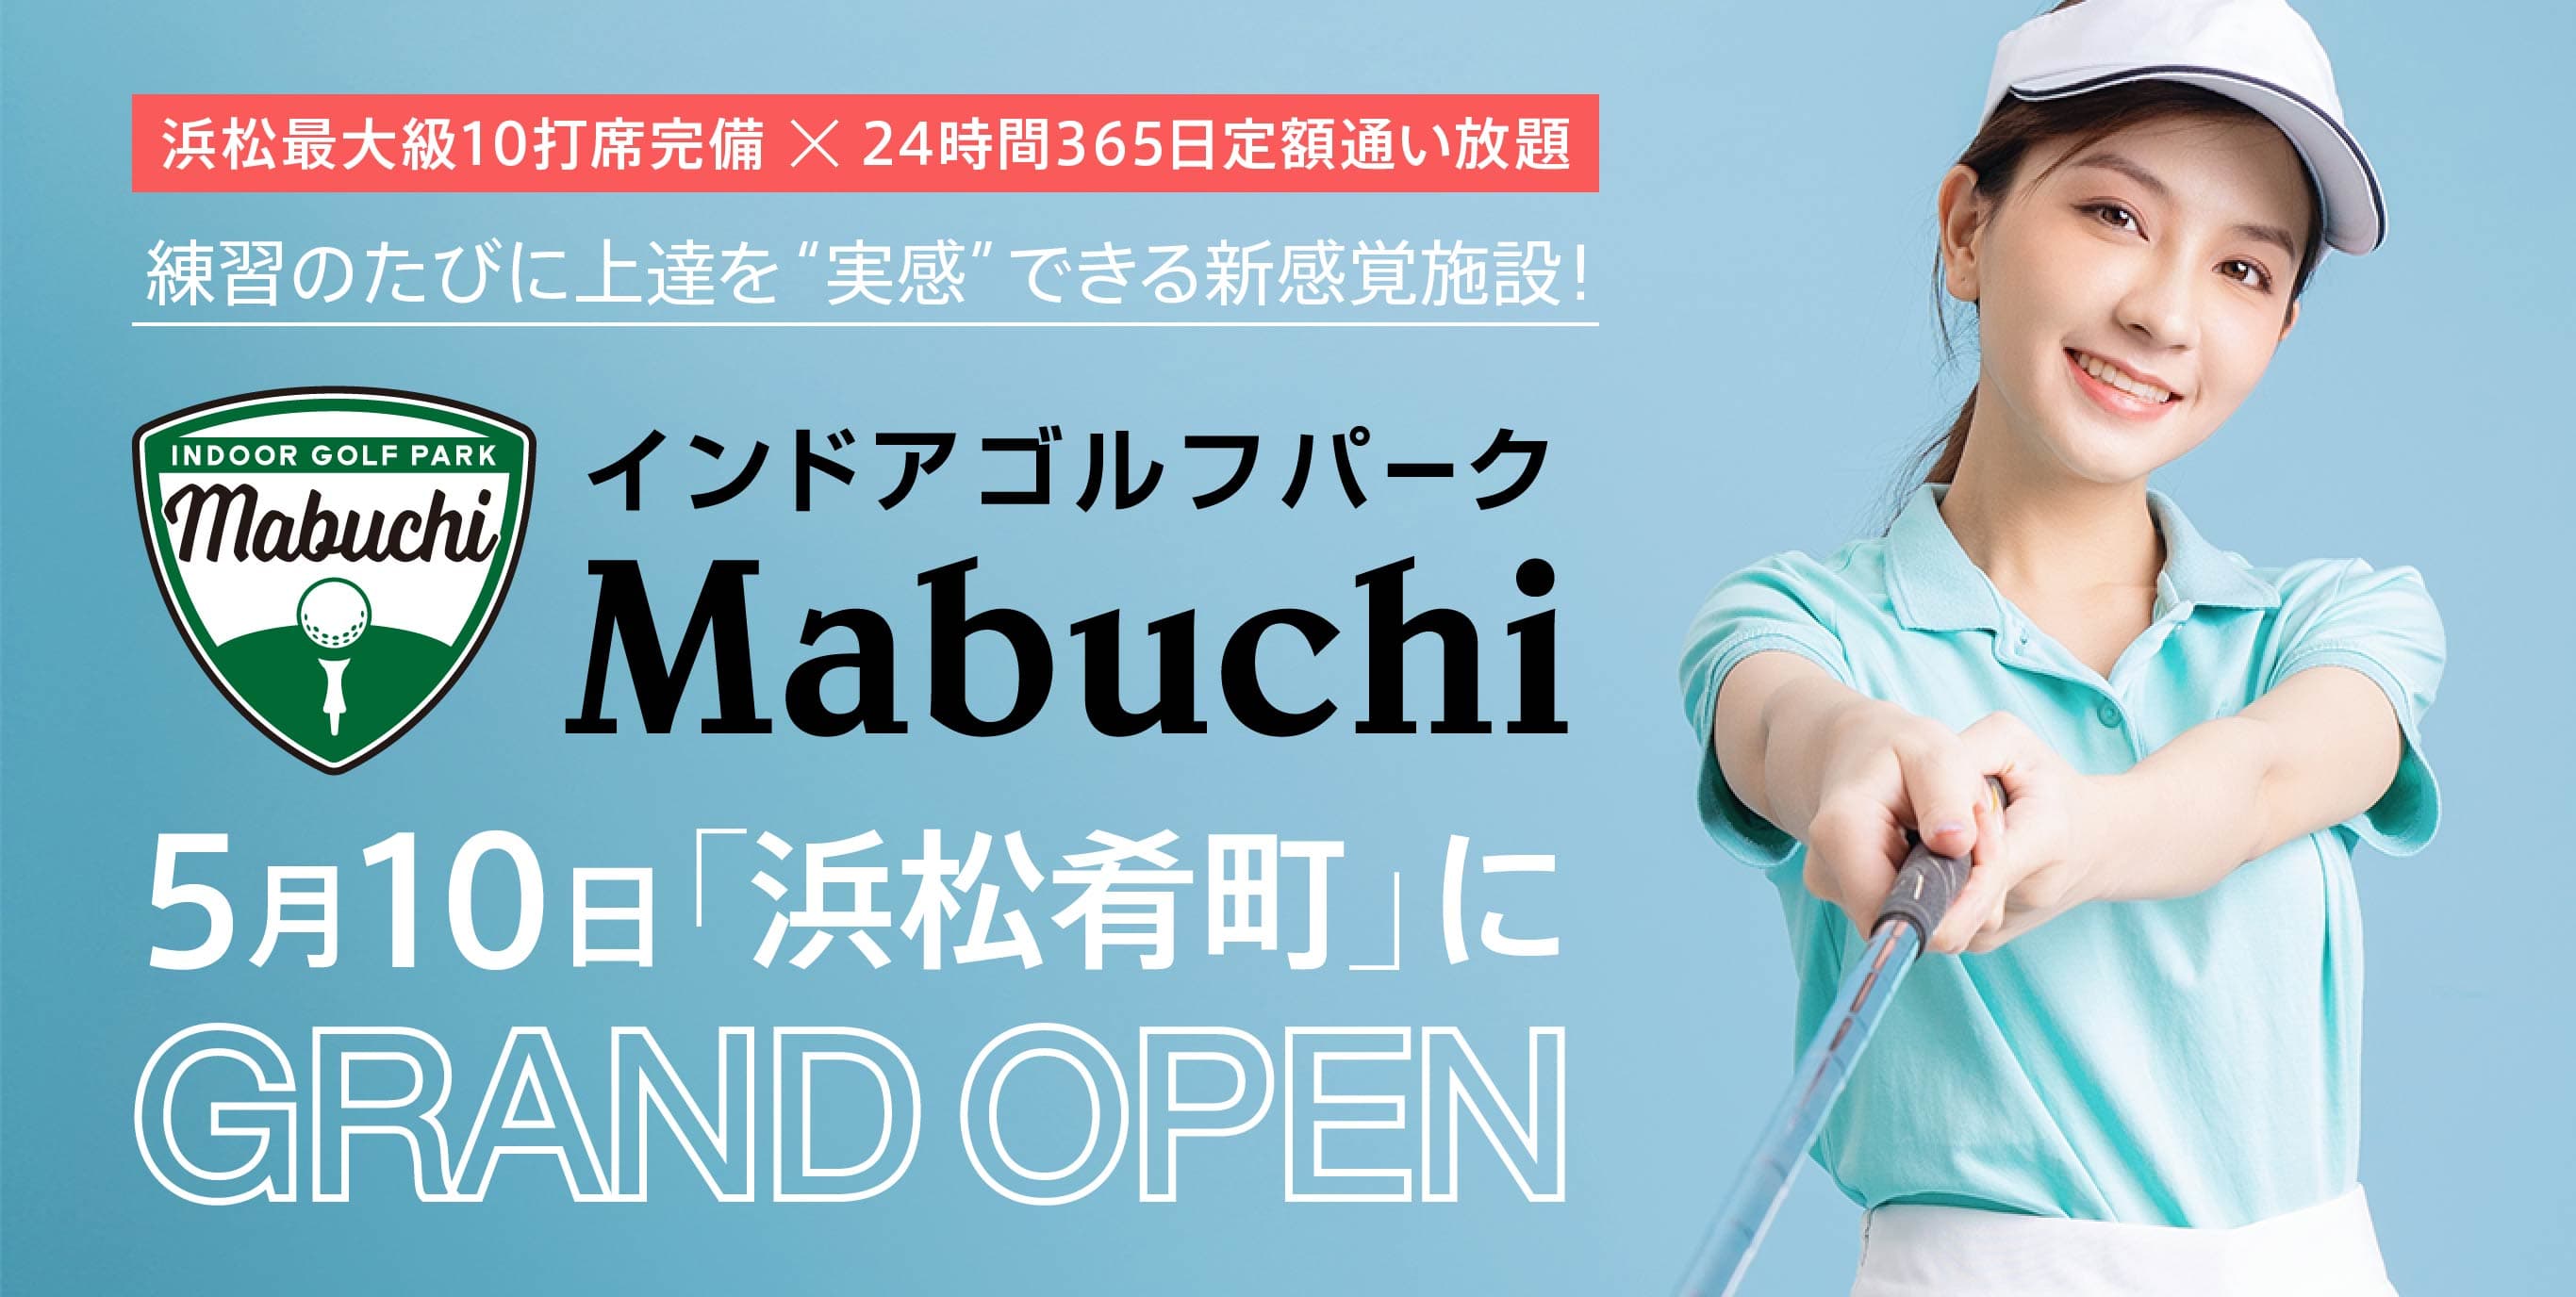 インドアゴルフパーク Mabuchi | 最新シミュレーター・ 365日定額通い放題